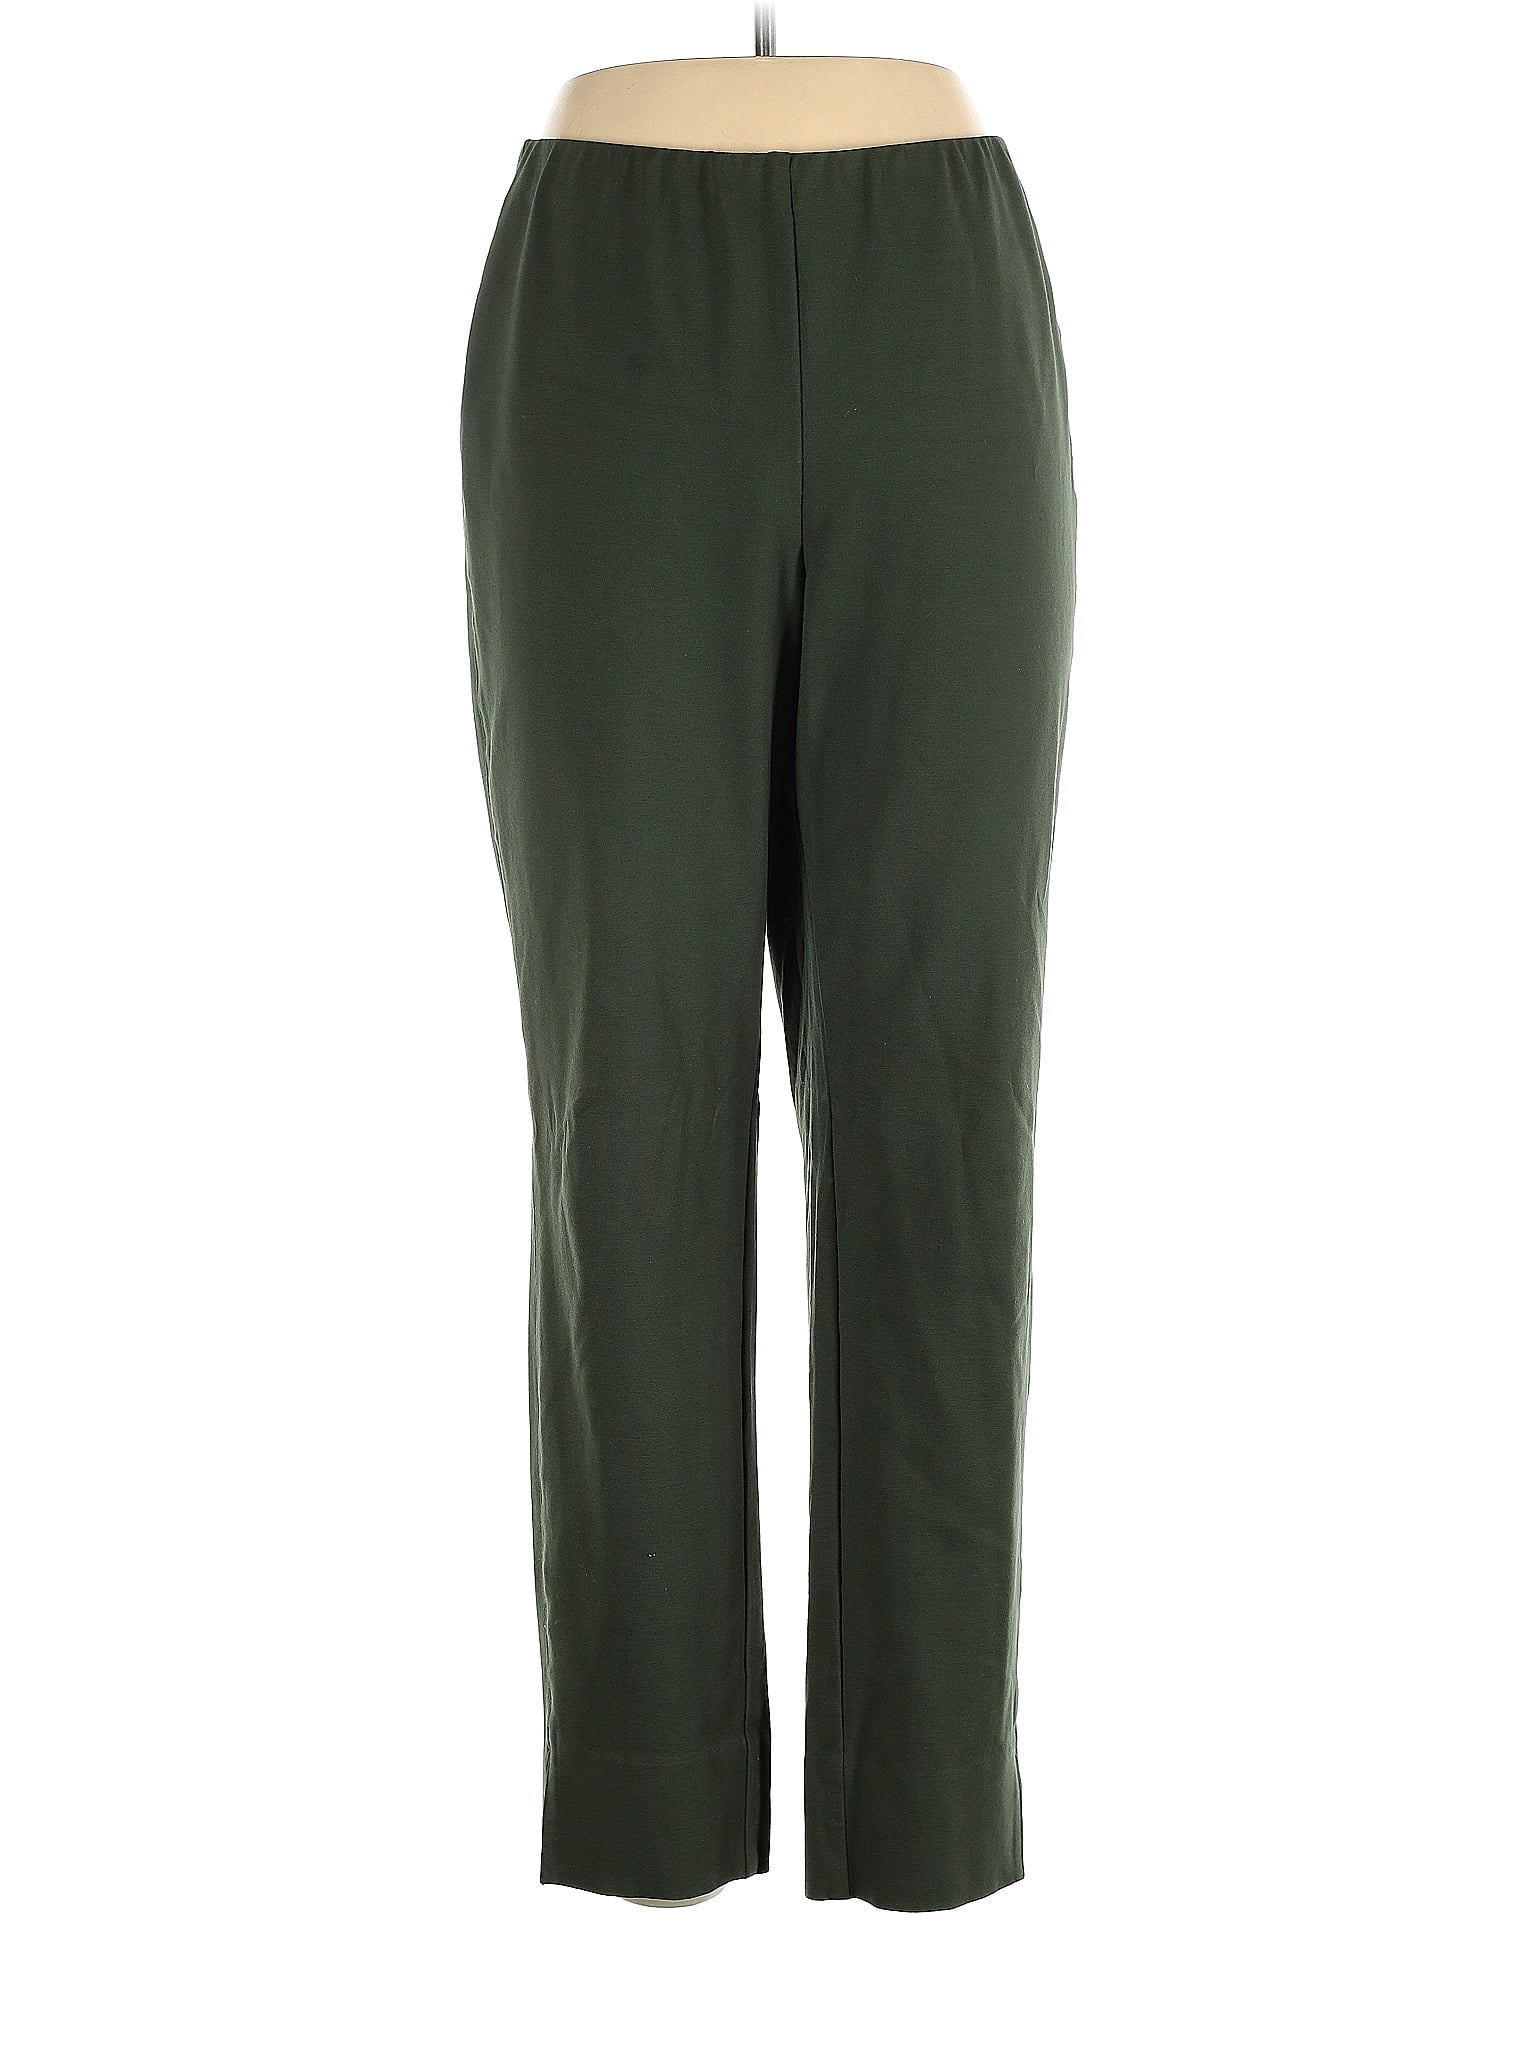 J.Jill Solid Green Dress Pants Size L - 71% off | thredUP